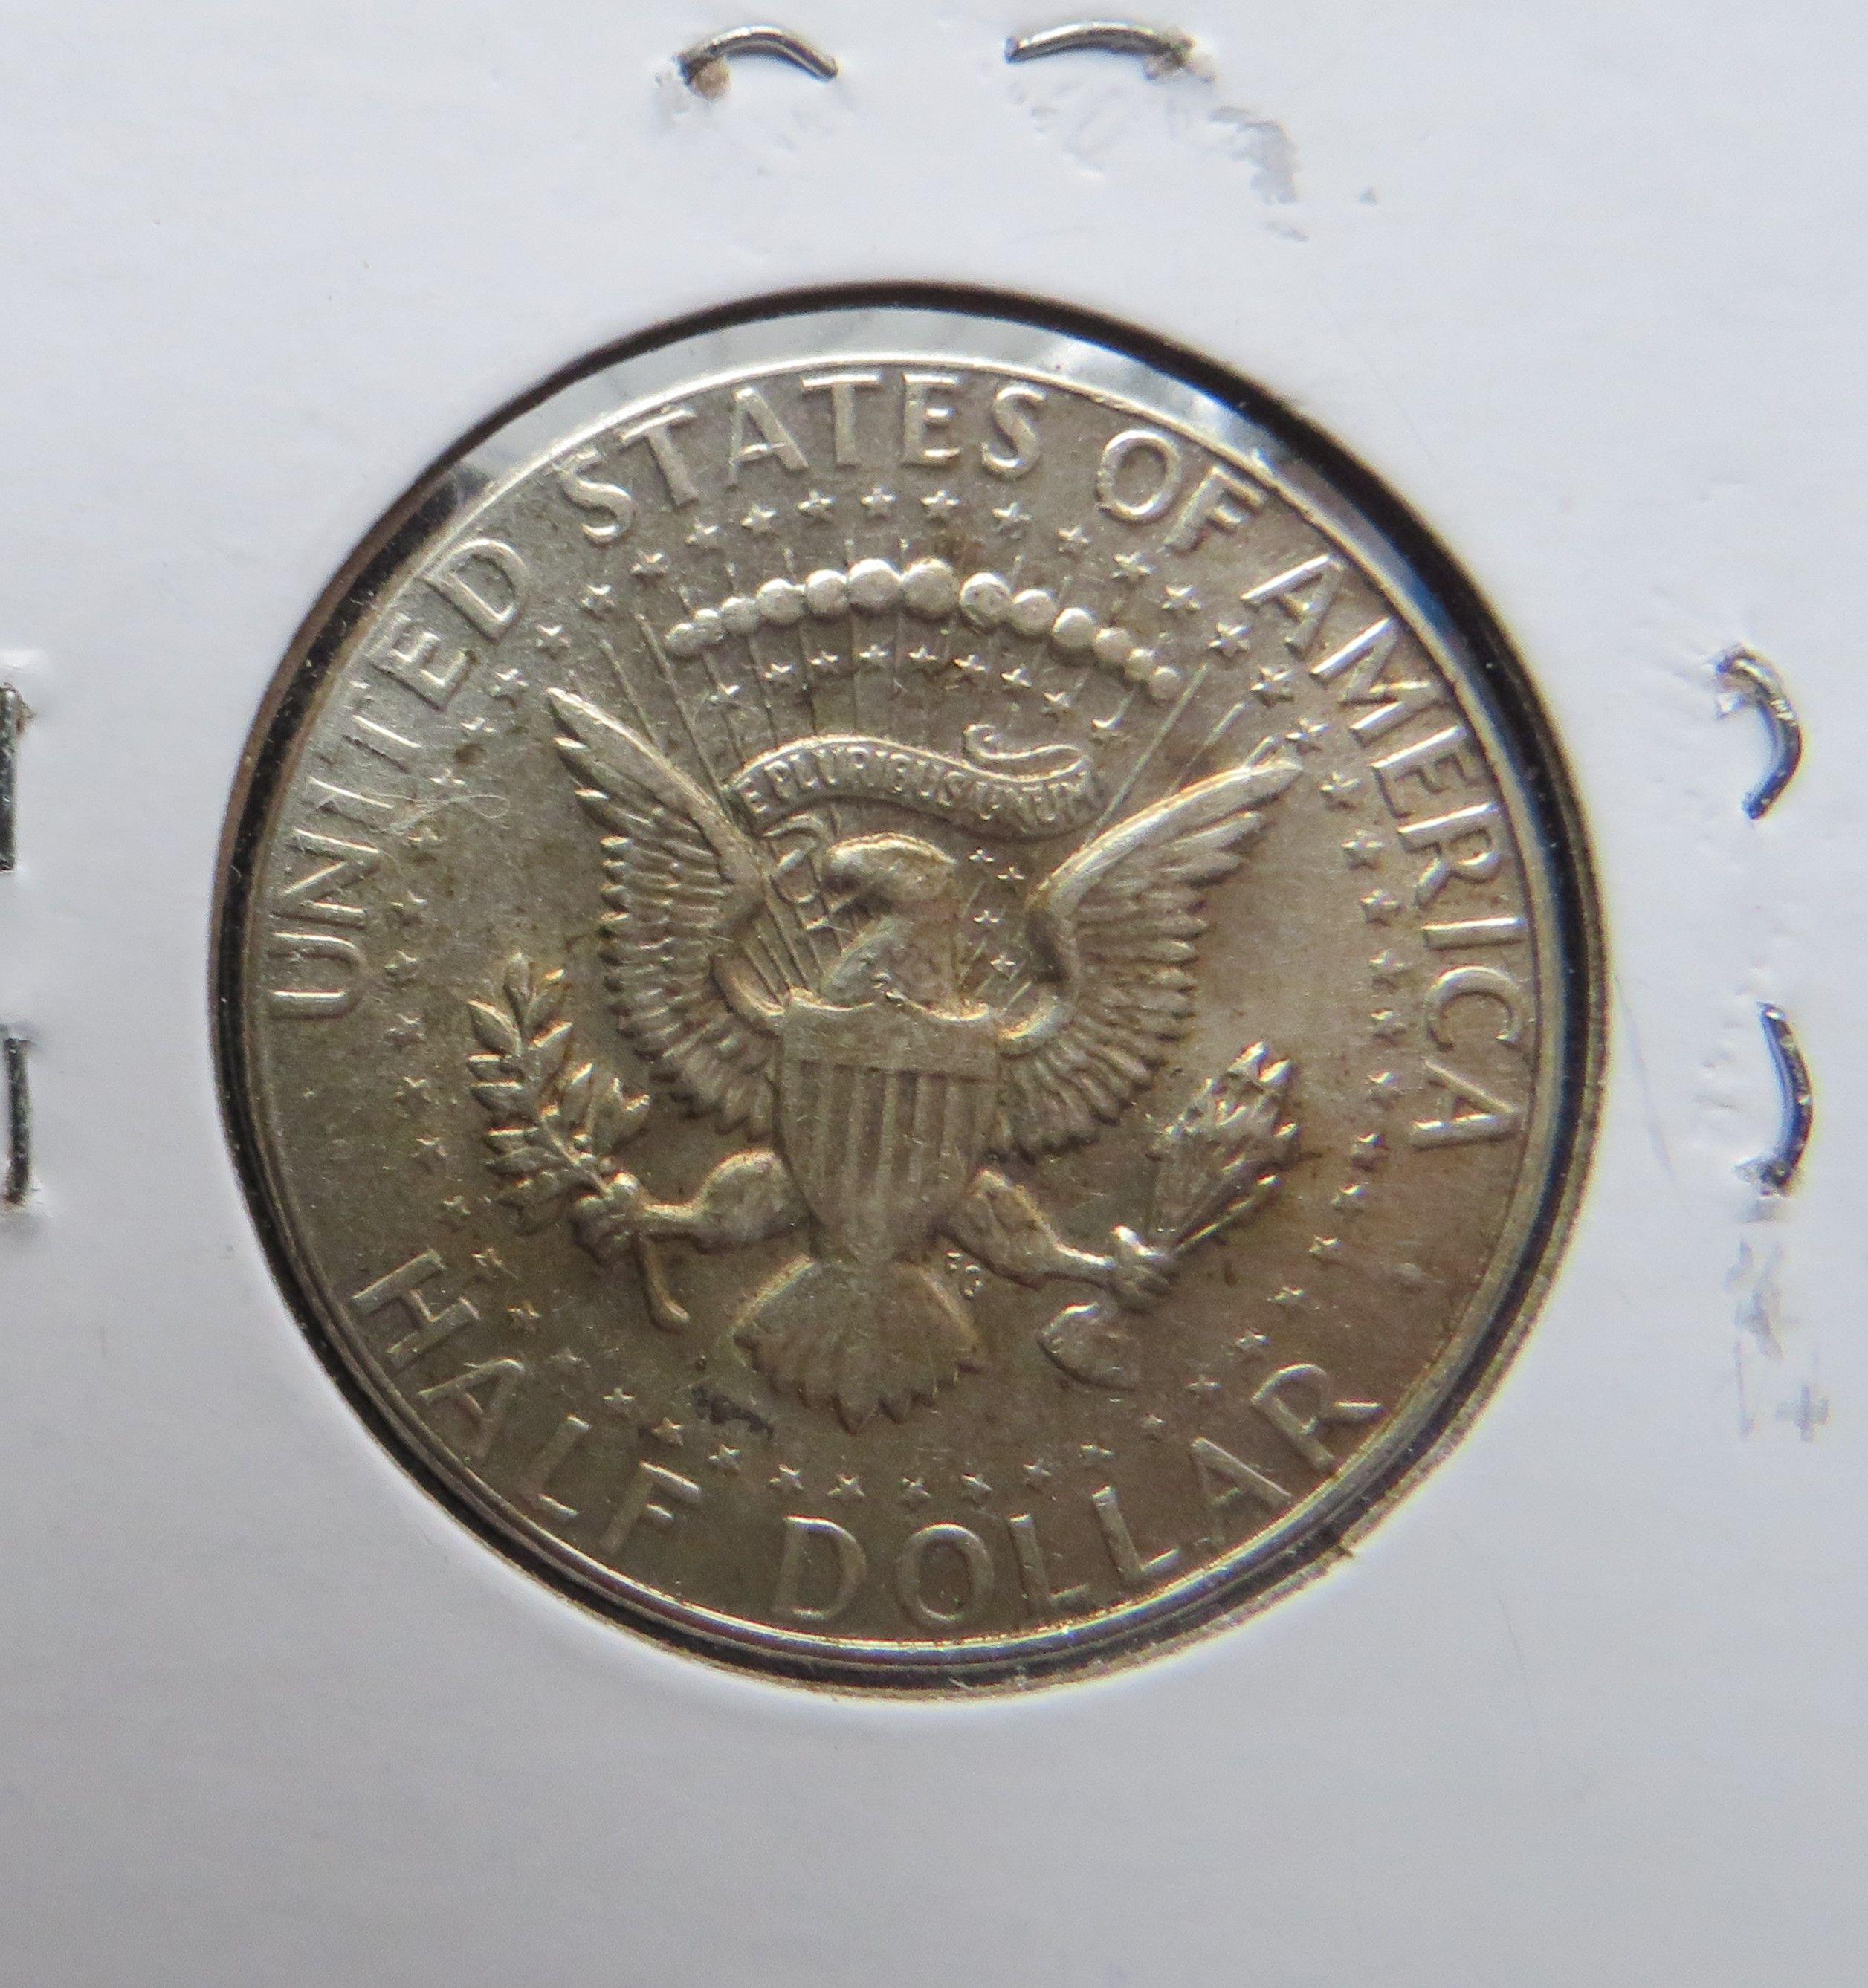 1969-D Kennedy Half Dollar